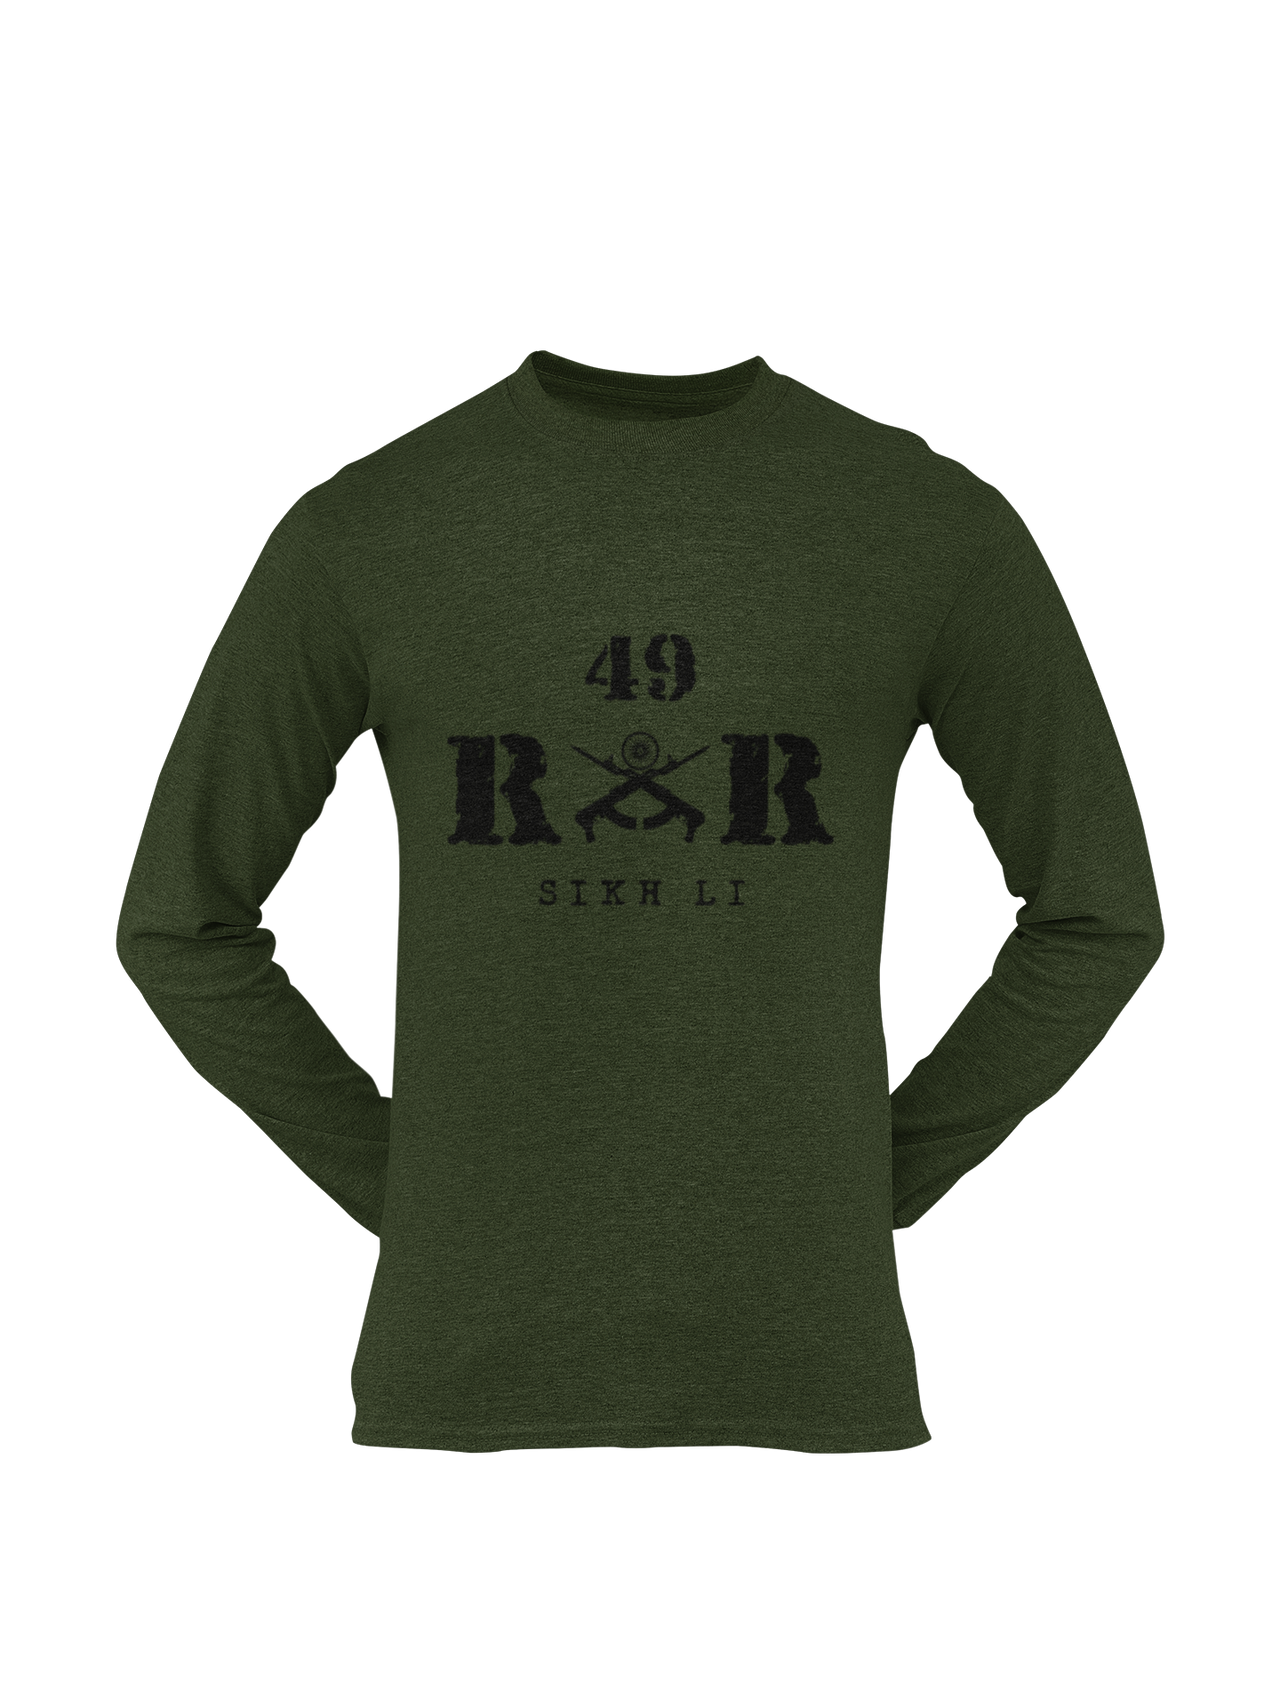 Rashtriya Rifles T-shirt - 49 RR Sikh Li (Men)